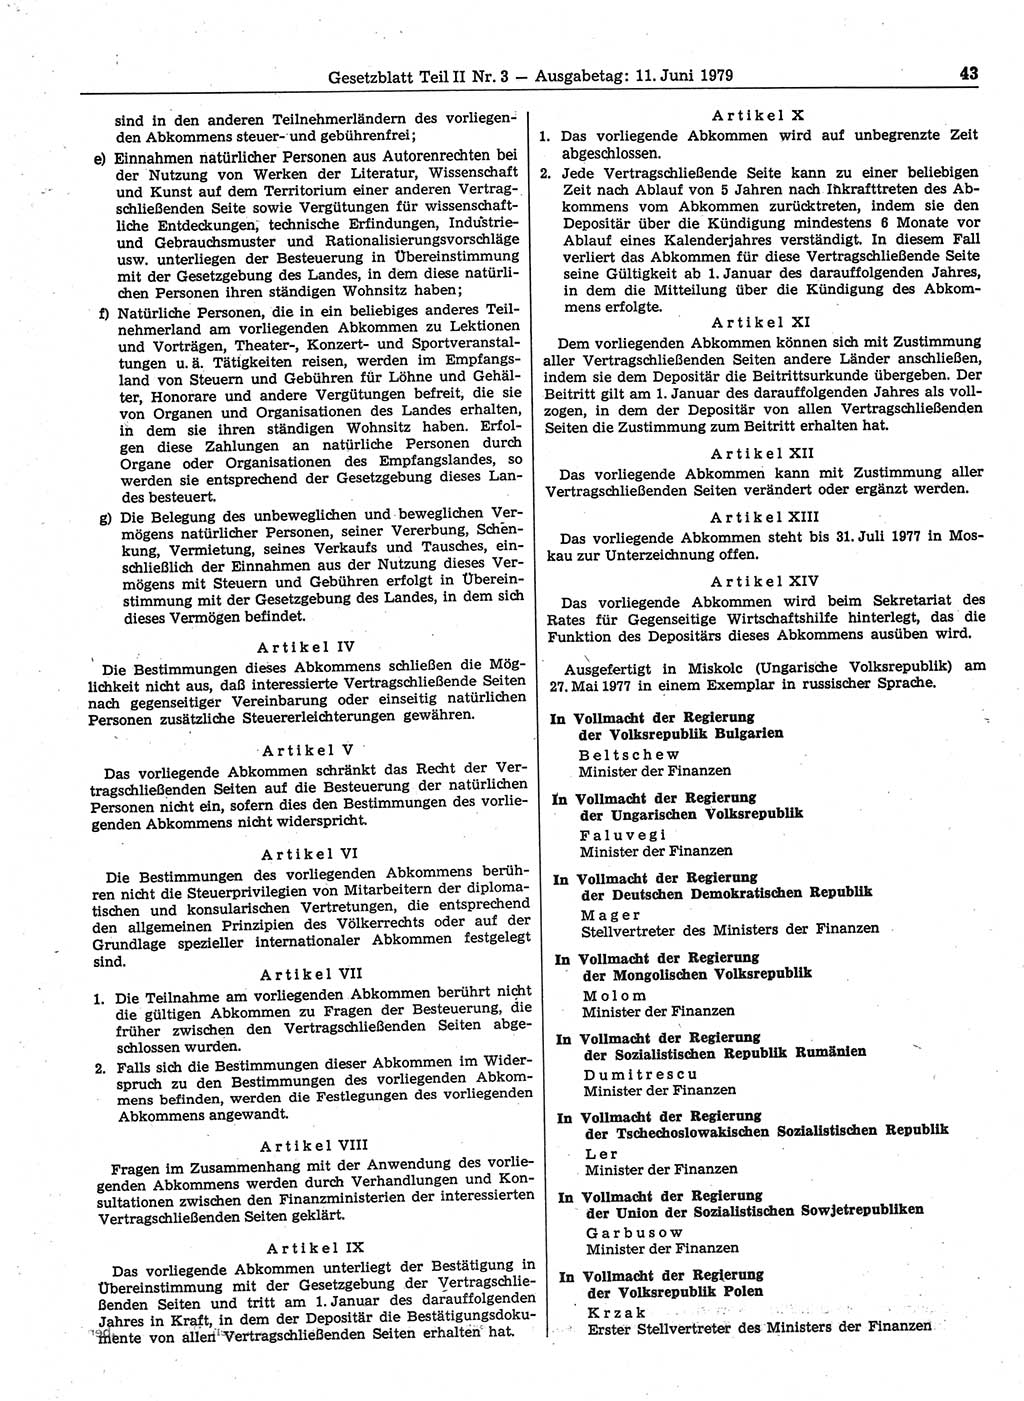 Gesetzblatt (GBl.) der Deutschen Demokratischen Republik (DDR) Teil ⅠⅠ 1979, Seite 43 (GBl. DDR ⅠⅠ 1979, S. 43)